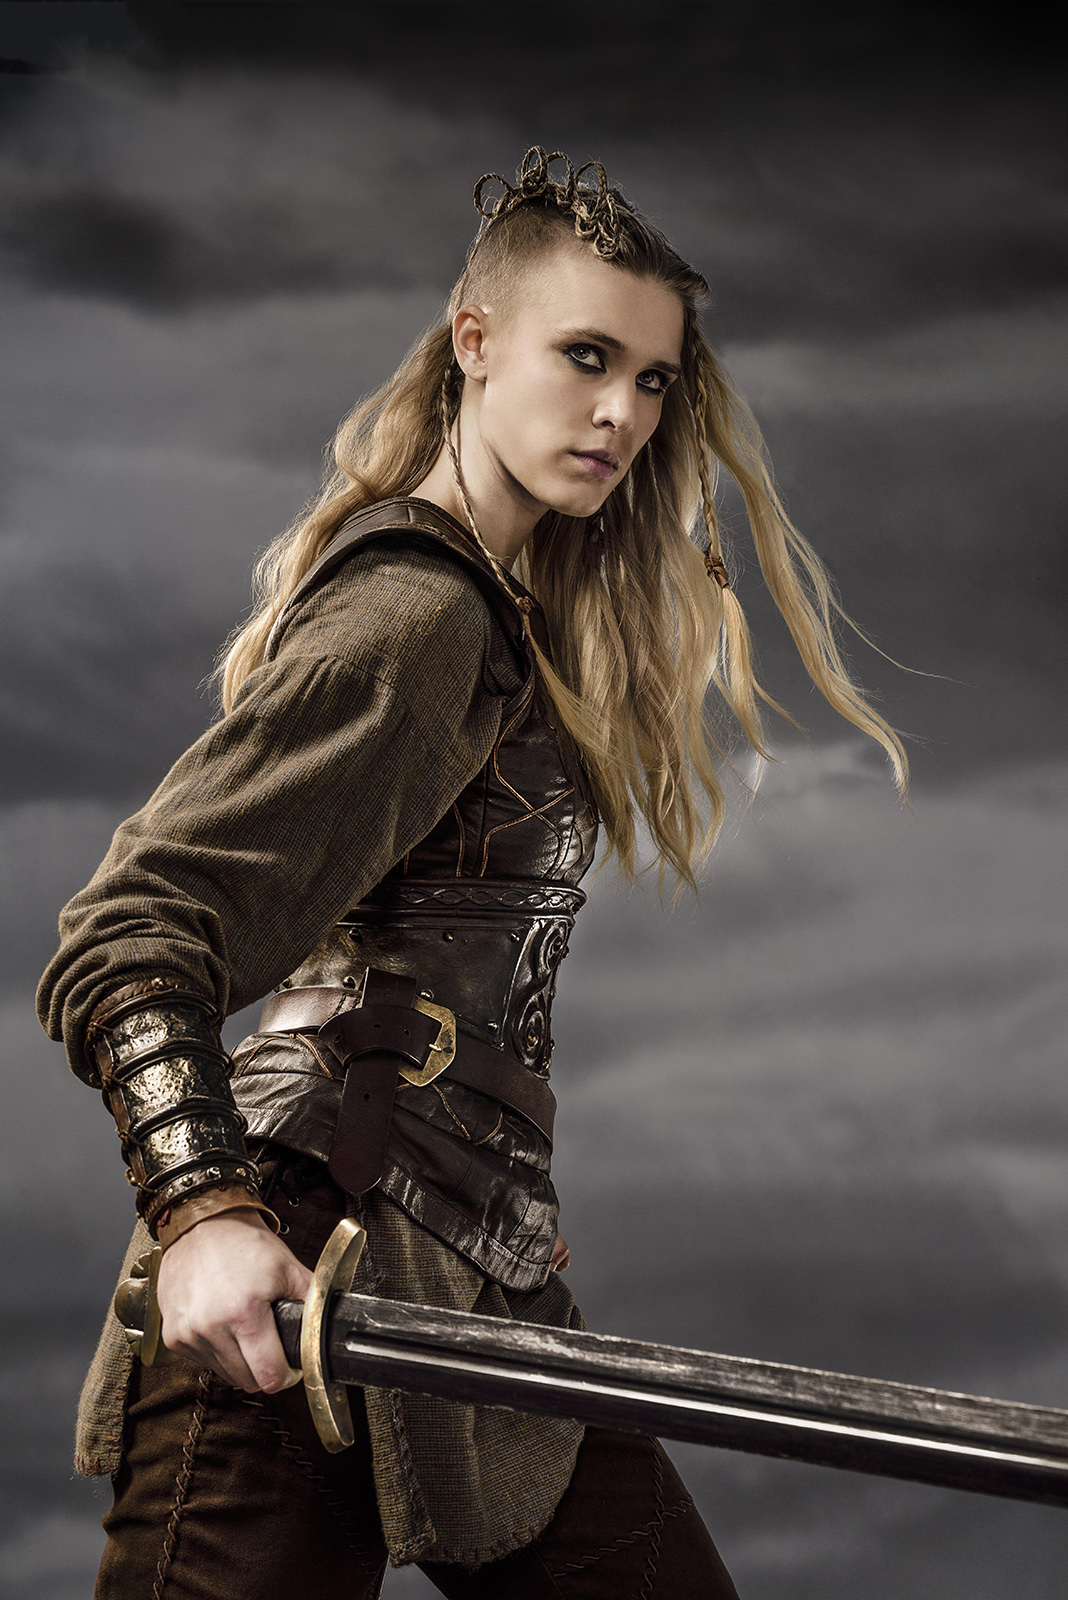 Vikingos Temporada 6: Por qué la actriz Gaia Weiss renunció al programa